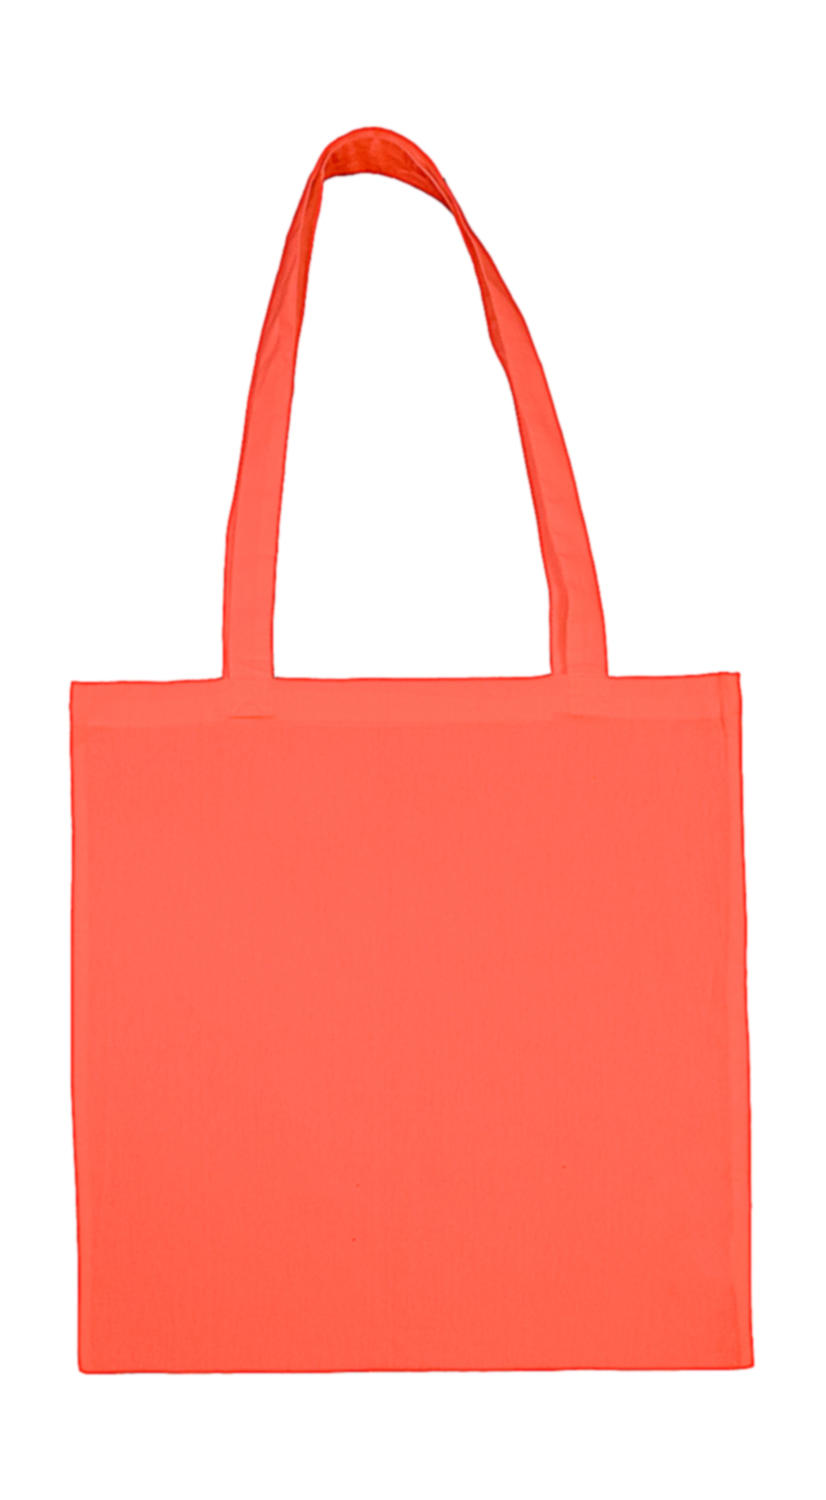  Cotton Bag LH in Farbe Peach Echo